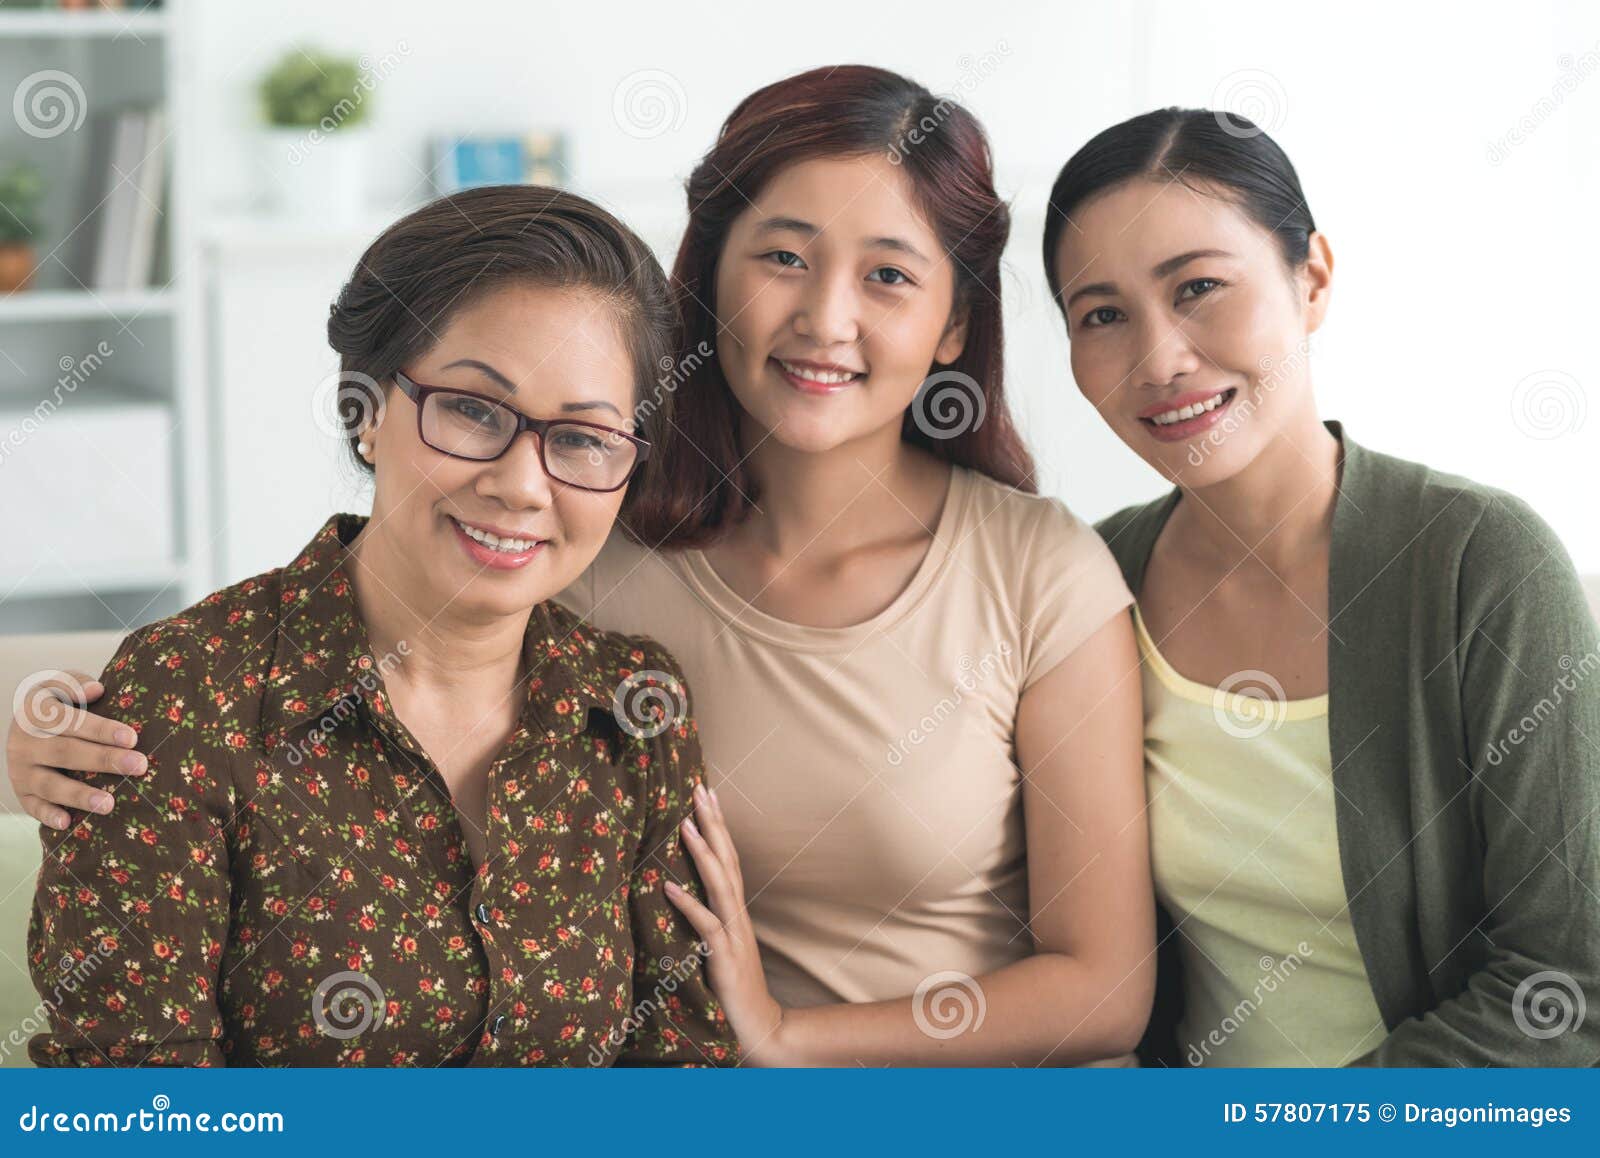 Японская мать и дочка. Китайские дочь мама и бабушка. Мама дочь и бабушка корейские. Дочь/ мать и бабушка китайки. Мама дочь смартфон.